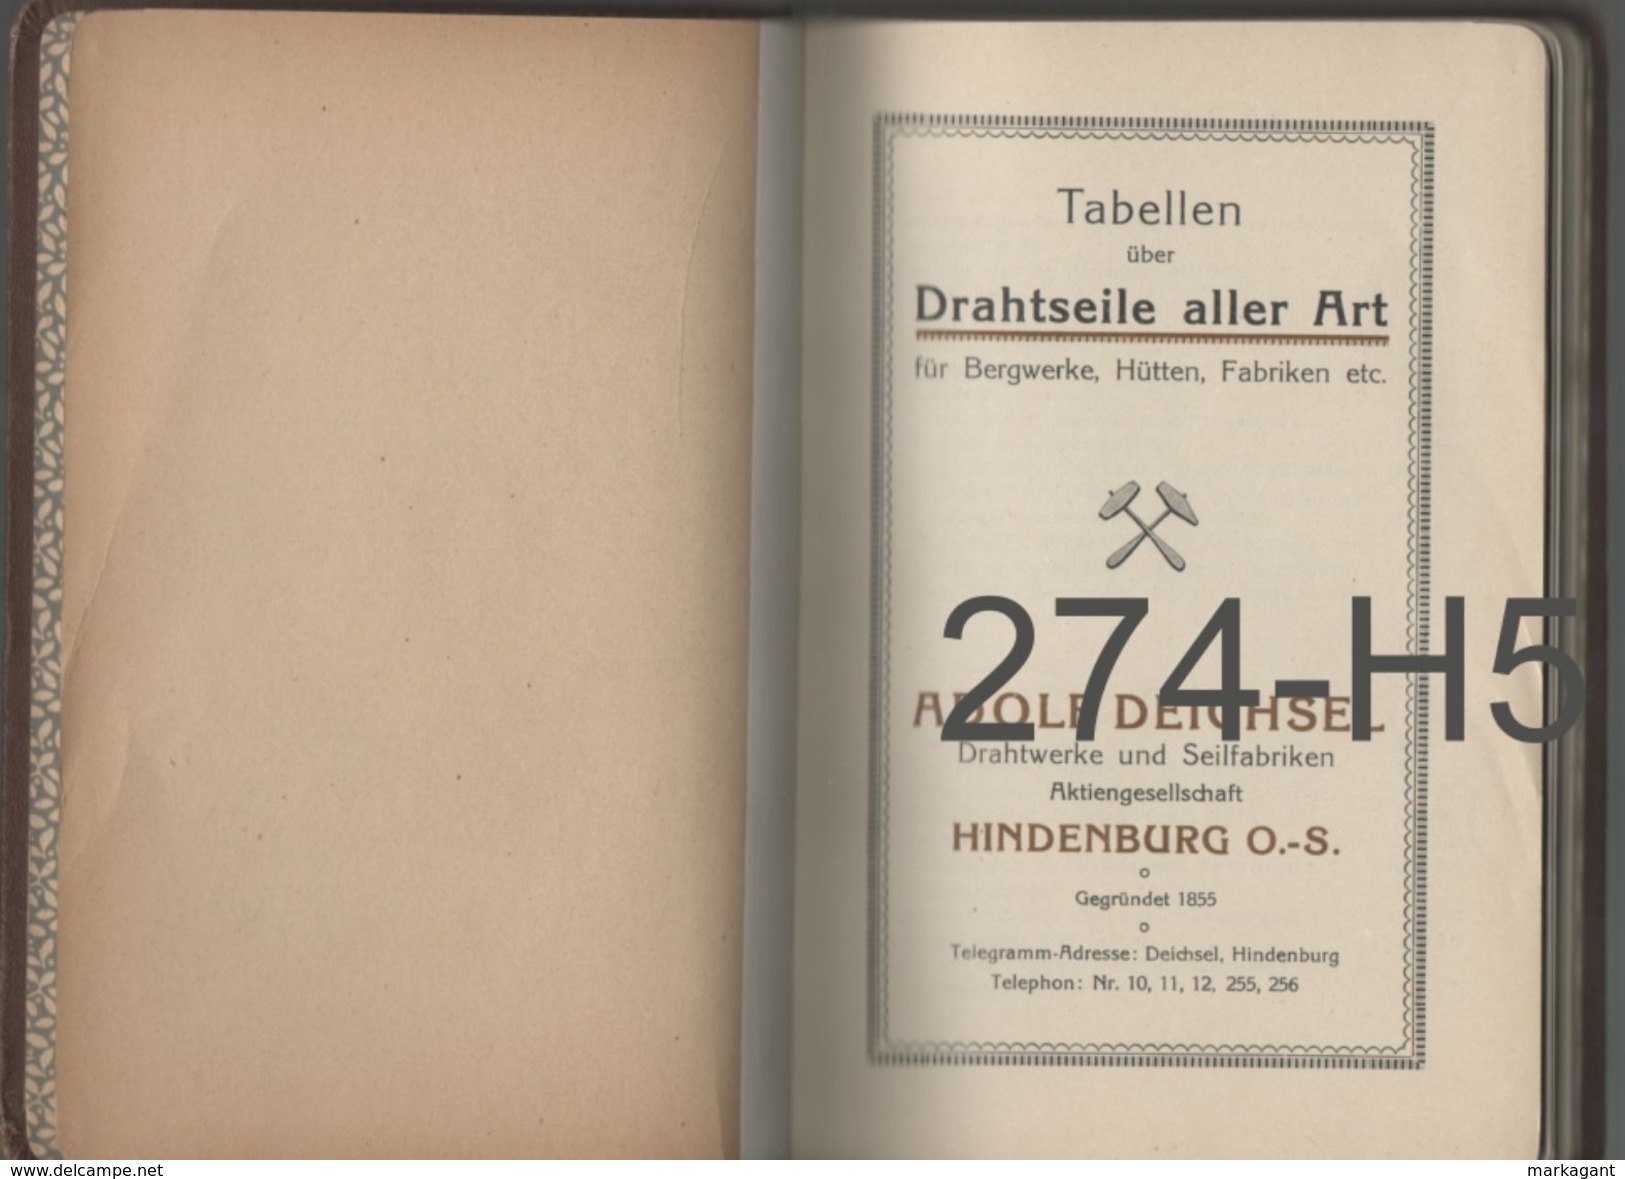 ADOLF DEICHSEL DRAHTWERKE UND SEILFABRIKEN / TABELLEN - Catálogos